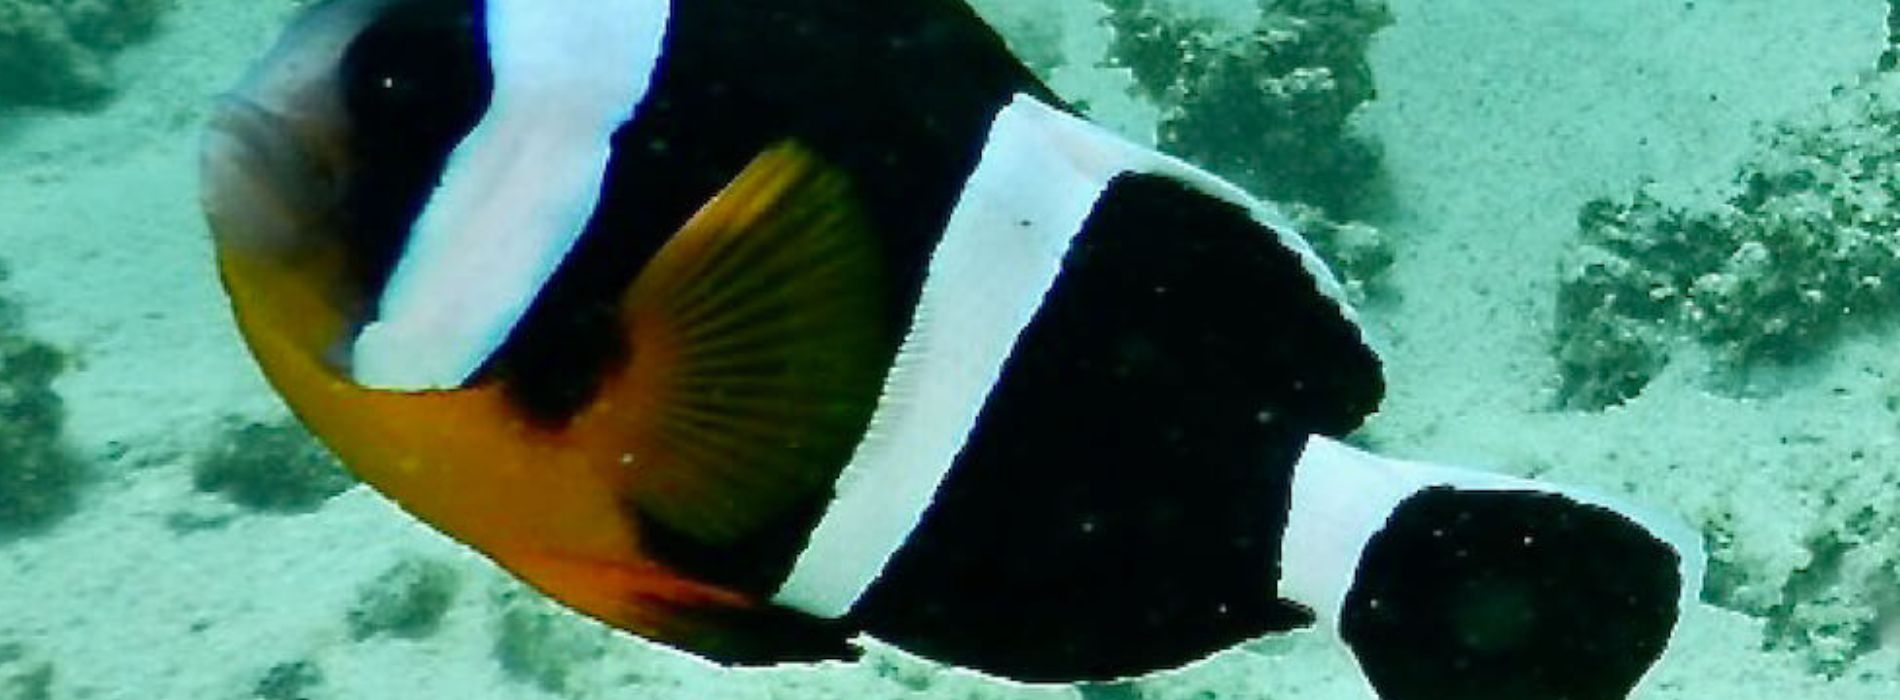 Mauritius-Anemonenfisch-Seitenansicht